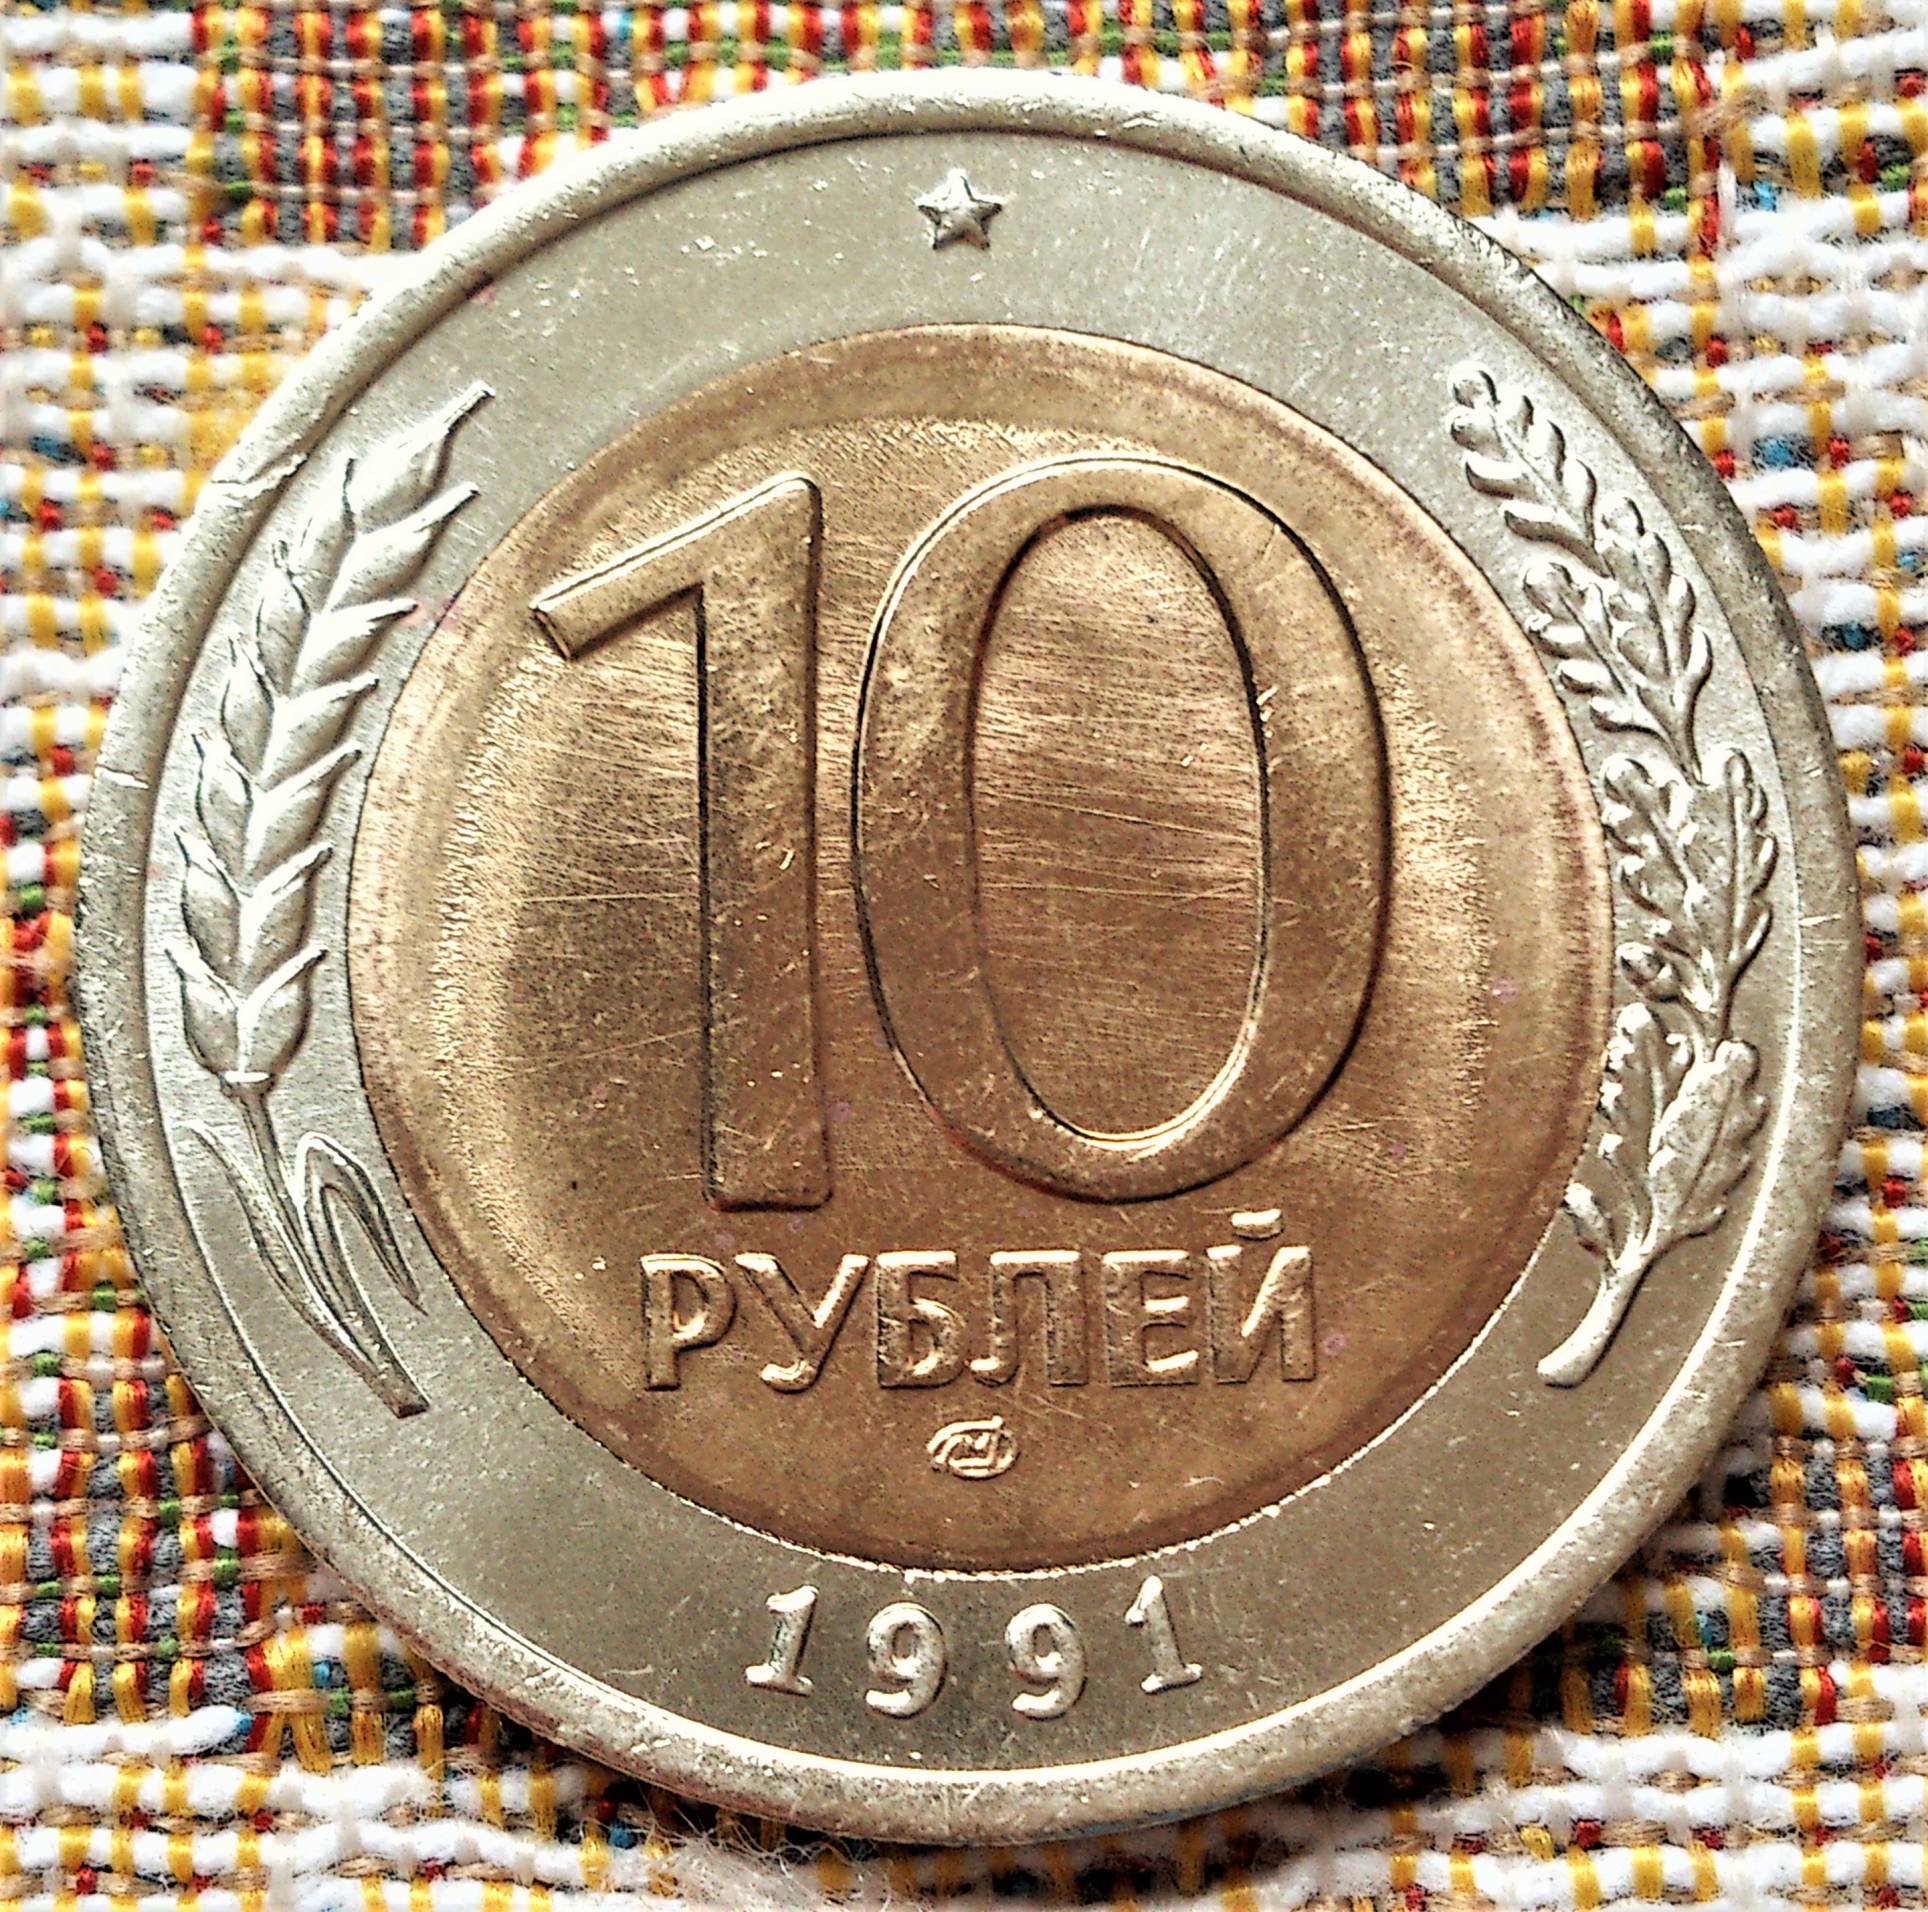 10 руб 1991